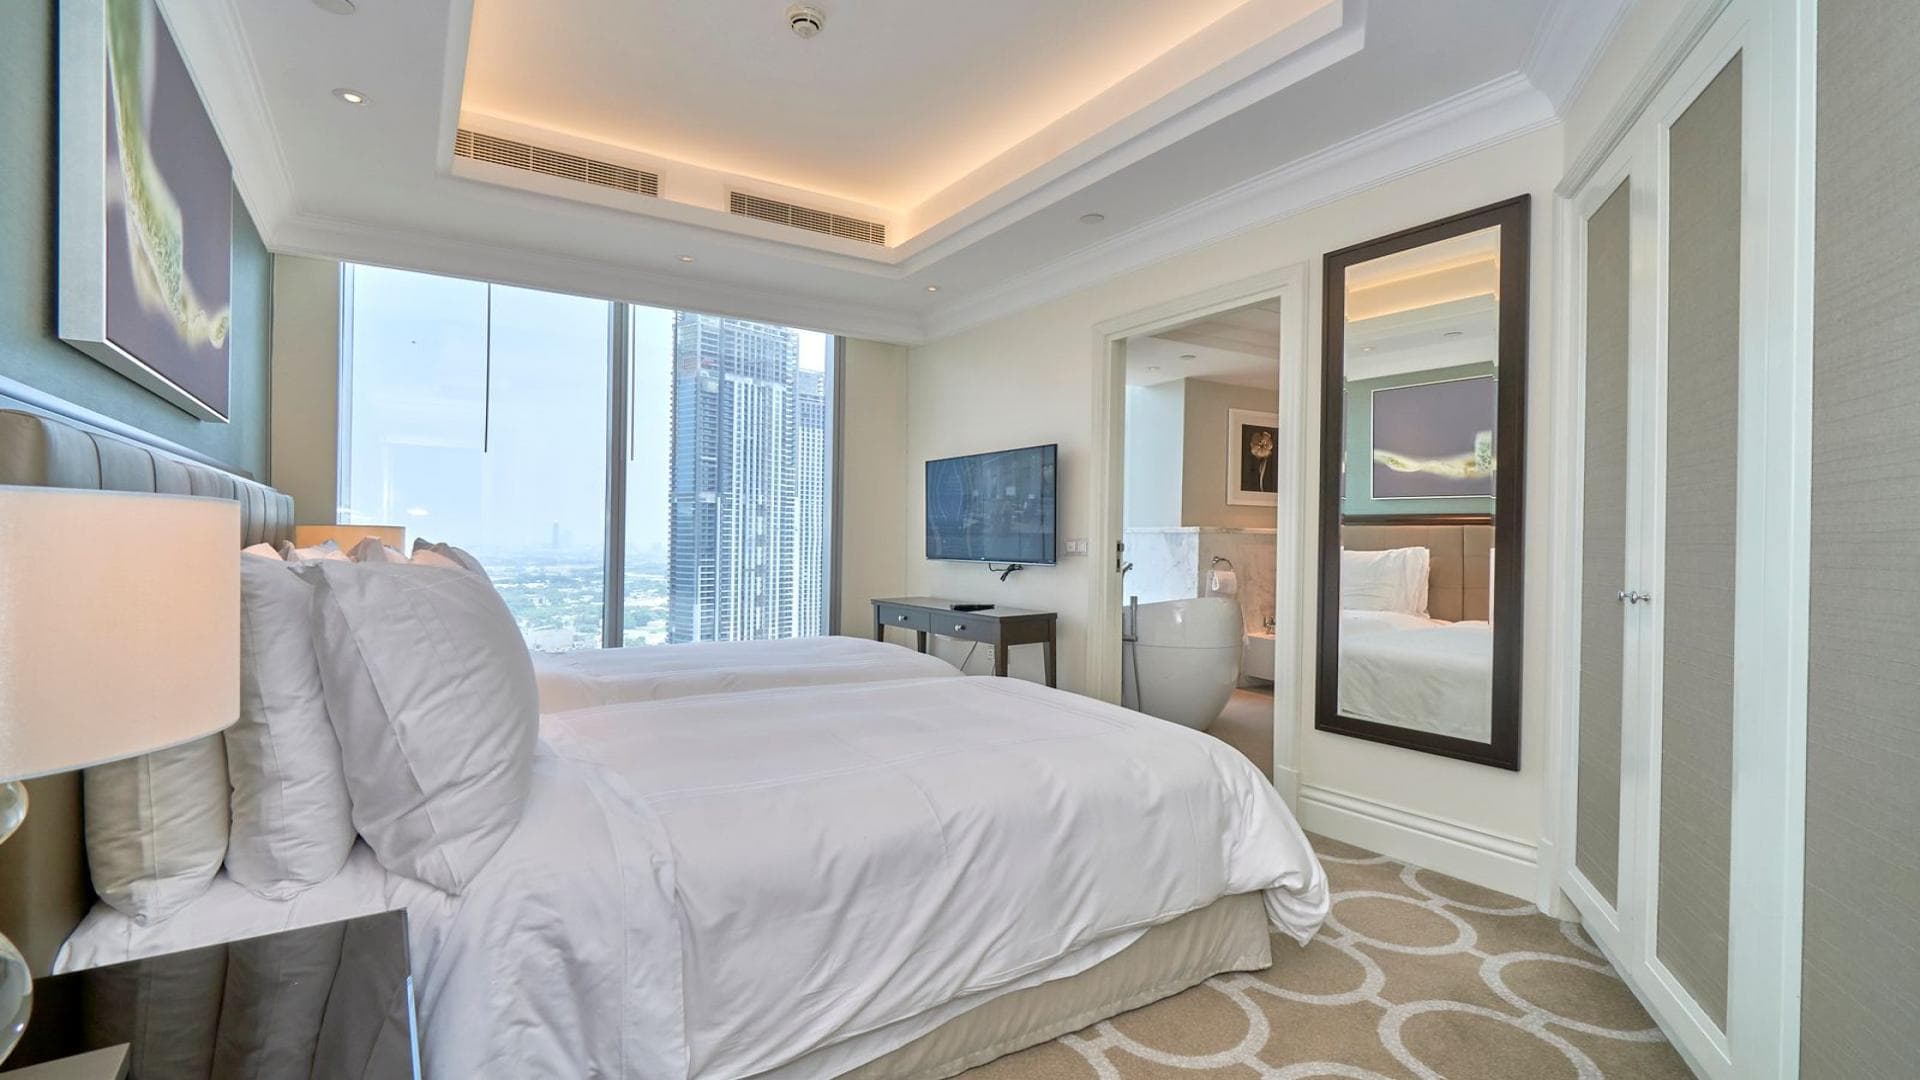 2 Bedroom Apartment For Rent Al Thamam 18 Lp37747 Badc7f2daa98f00.jpeg